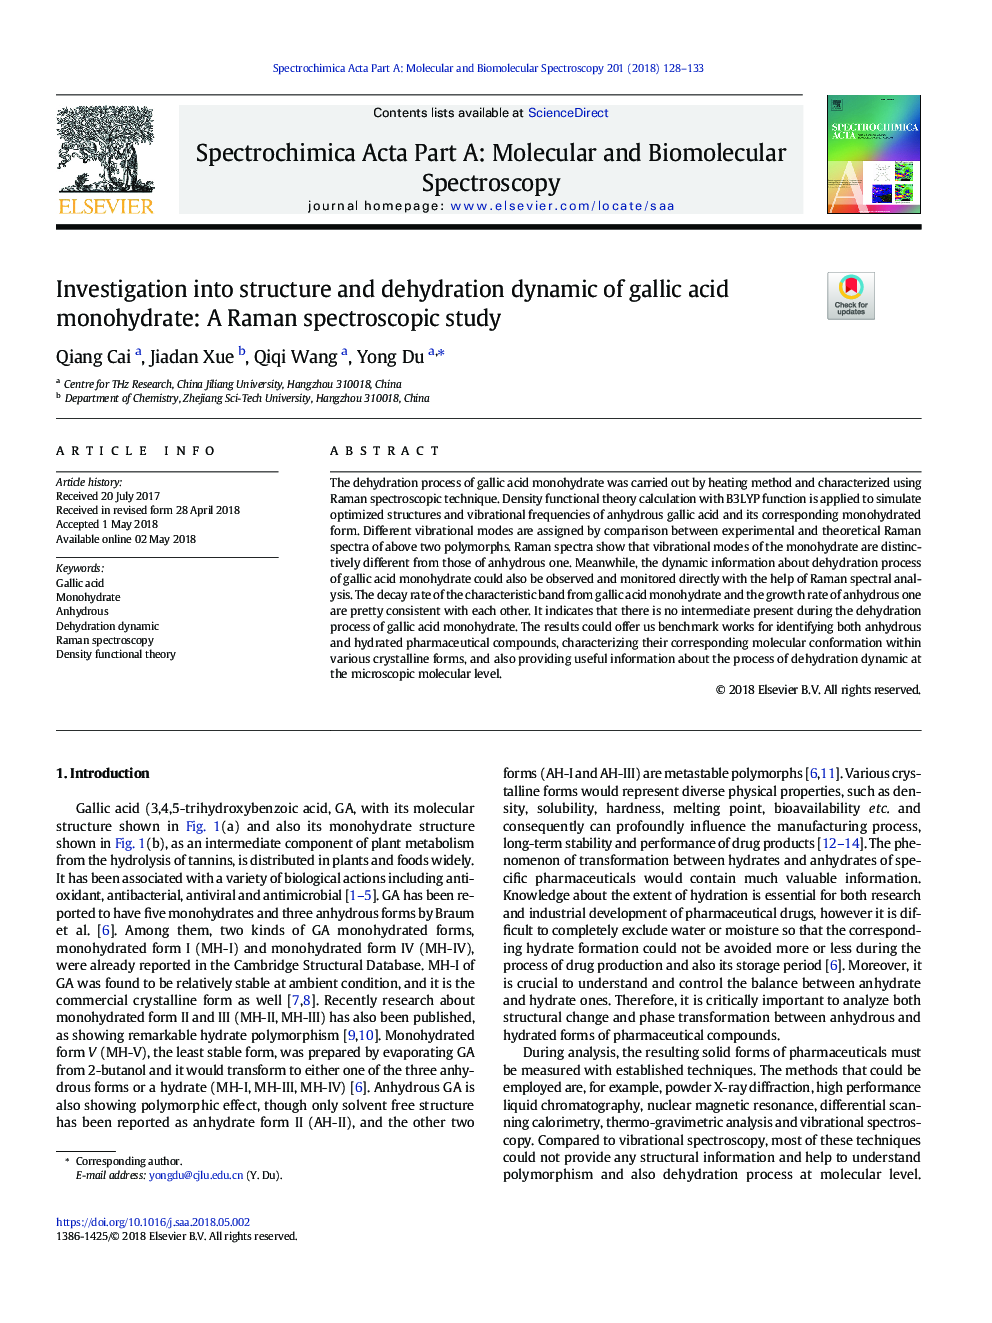 بررسی ساختار و پراکندگی آب و هوای مونوهیدرات گالیم اسید: مطالعه طیف سنجی رامان 